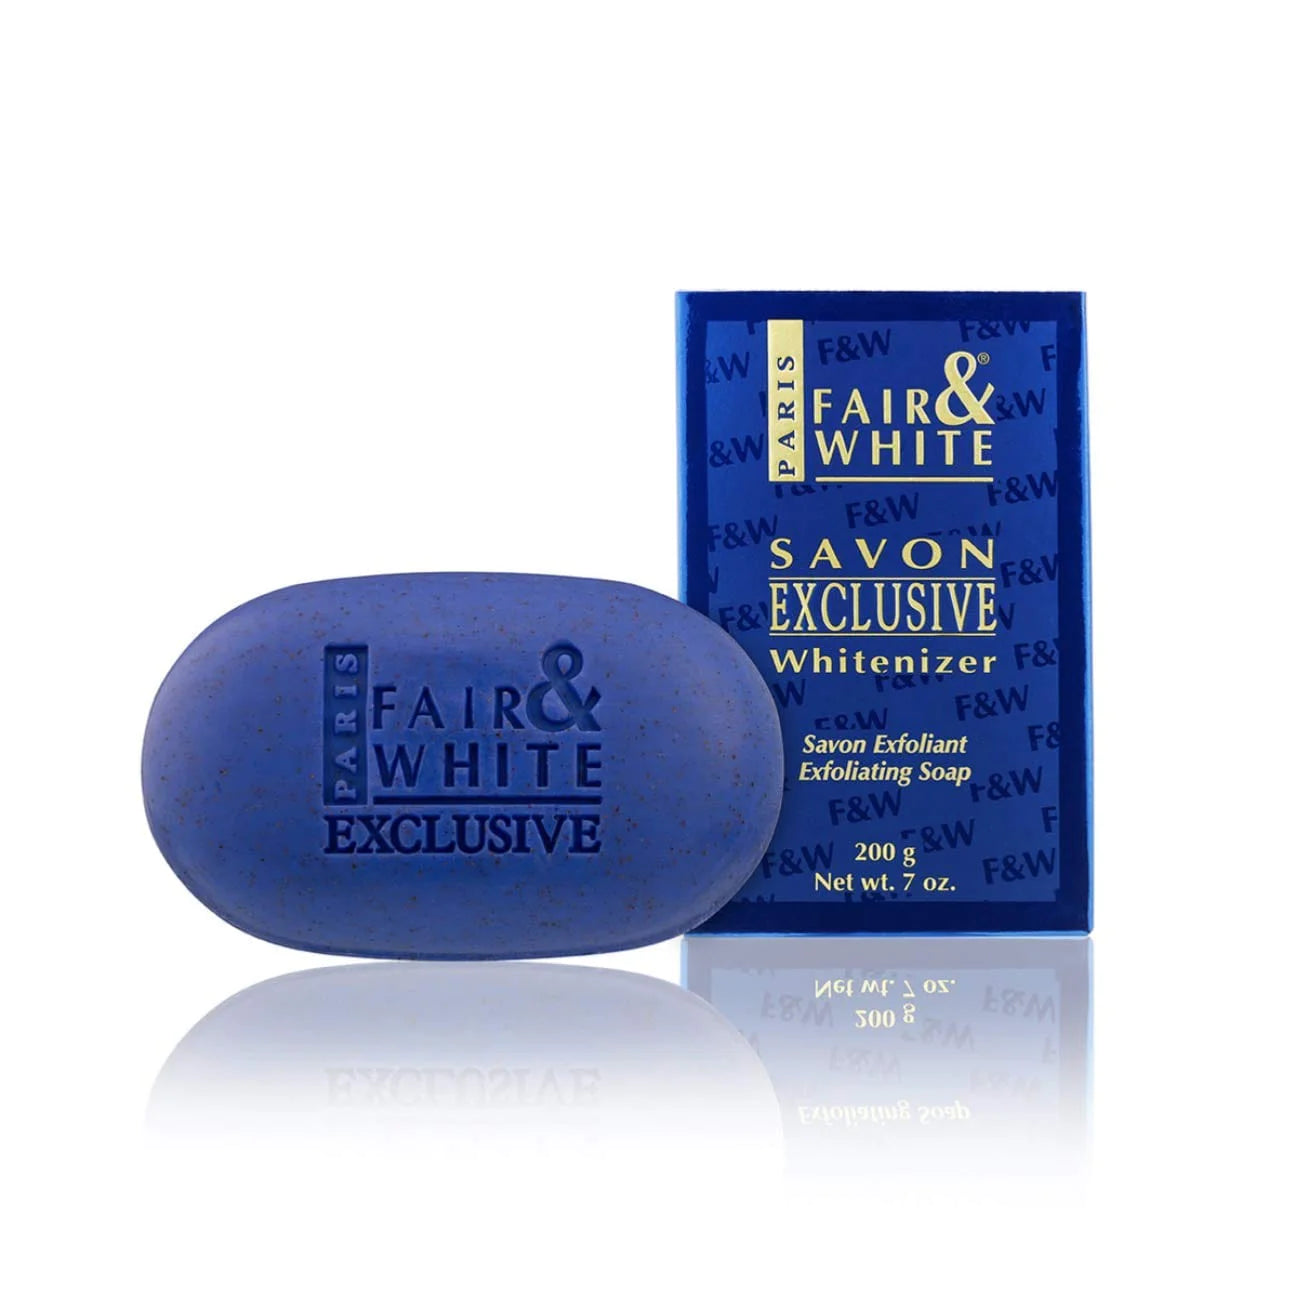 Fair & White Exclusive Whitenizer Exfoliating Soap